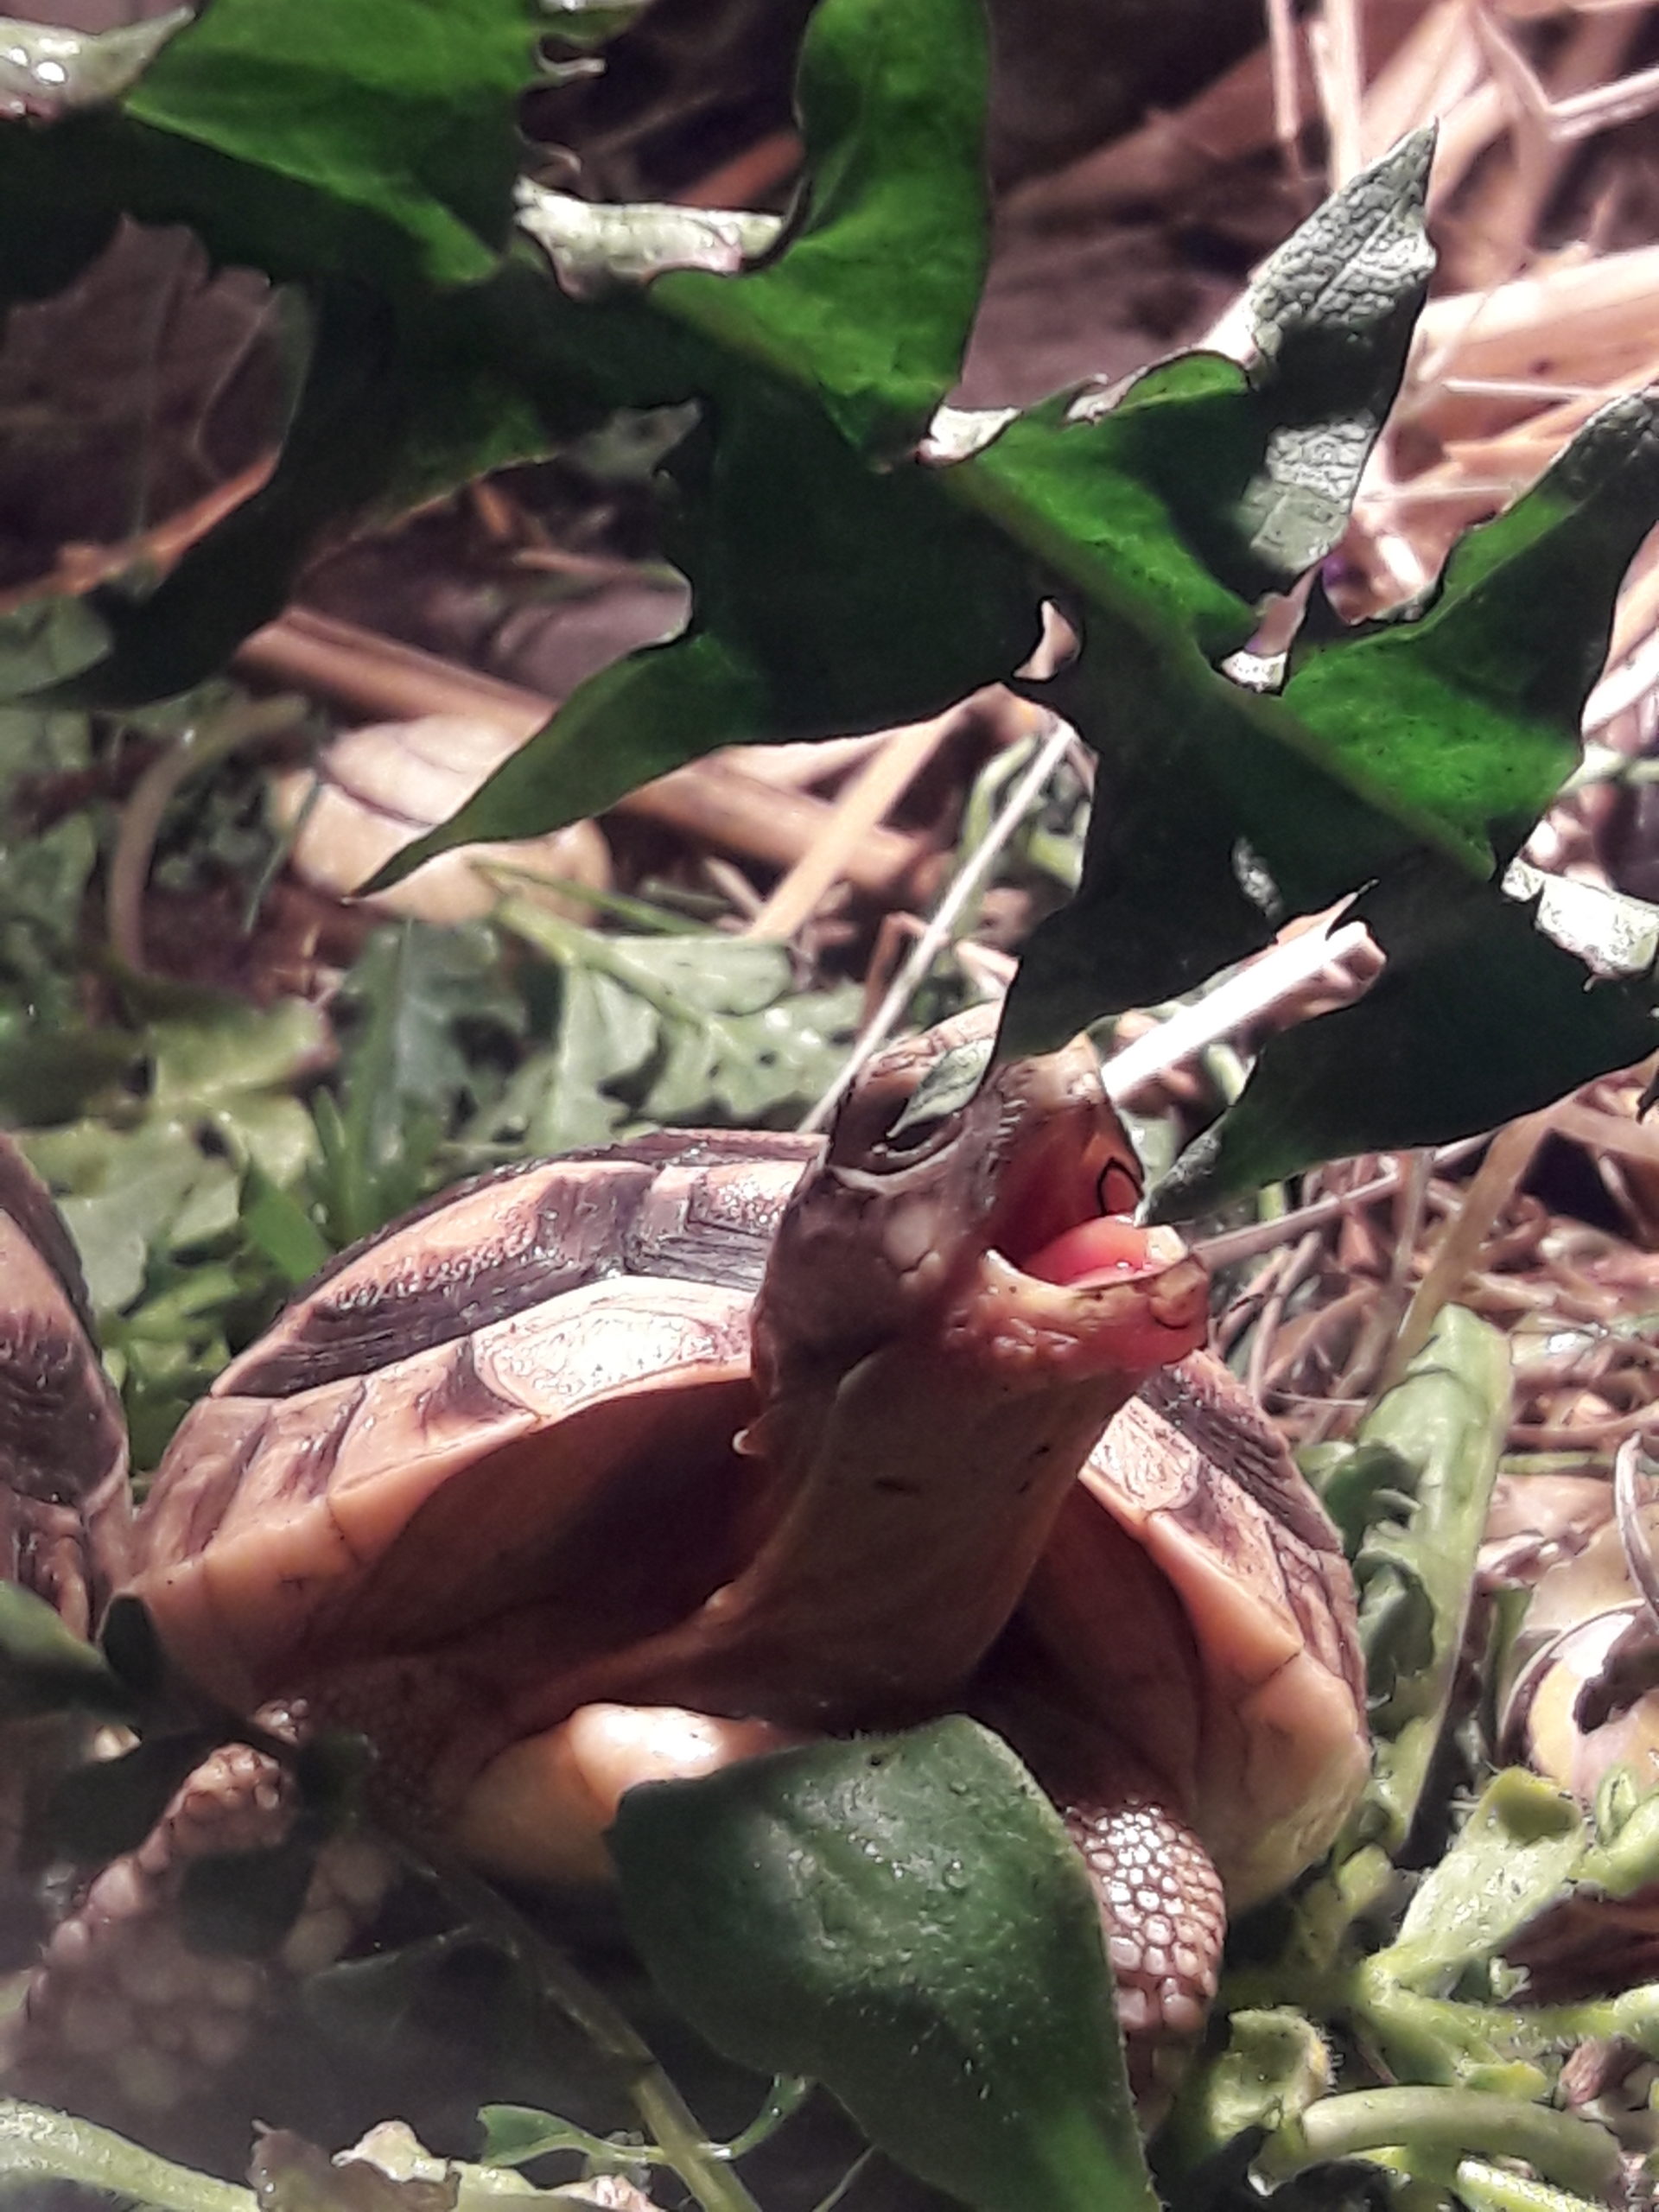 Griechische Babyschildkröte "Schiggy" beim fressen